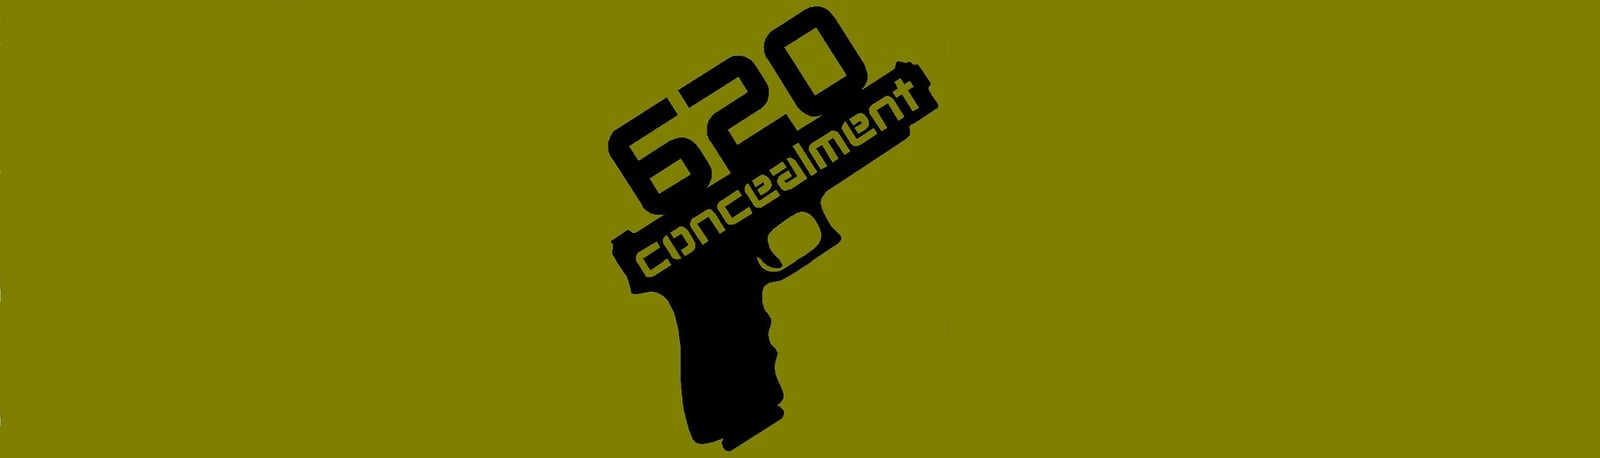 620 Concealment